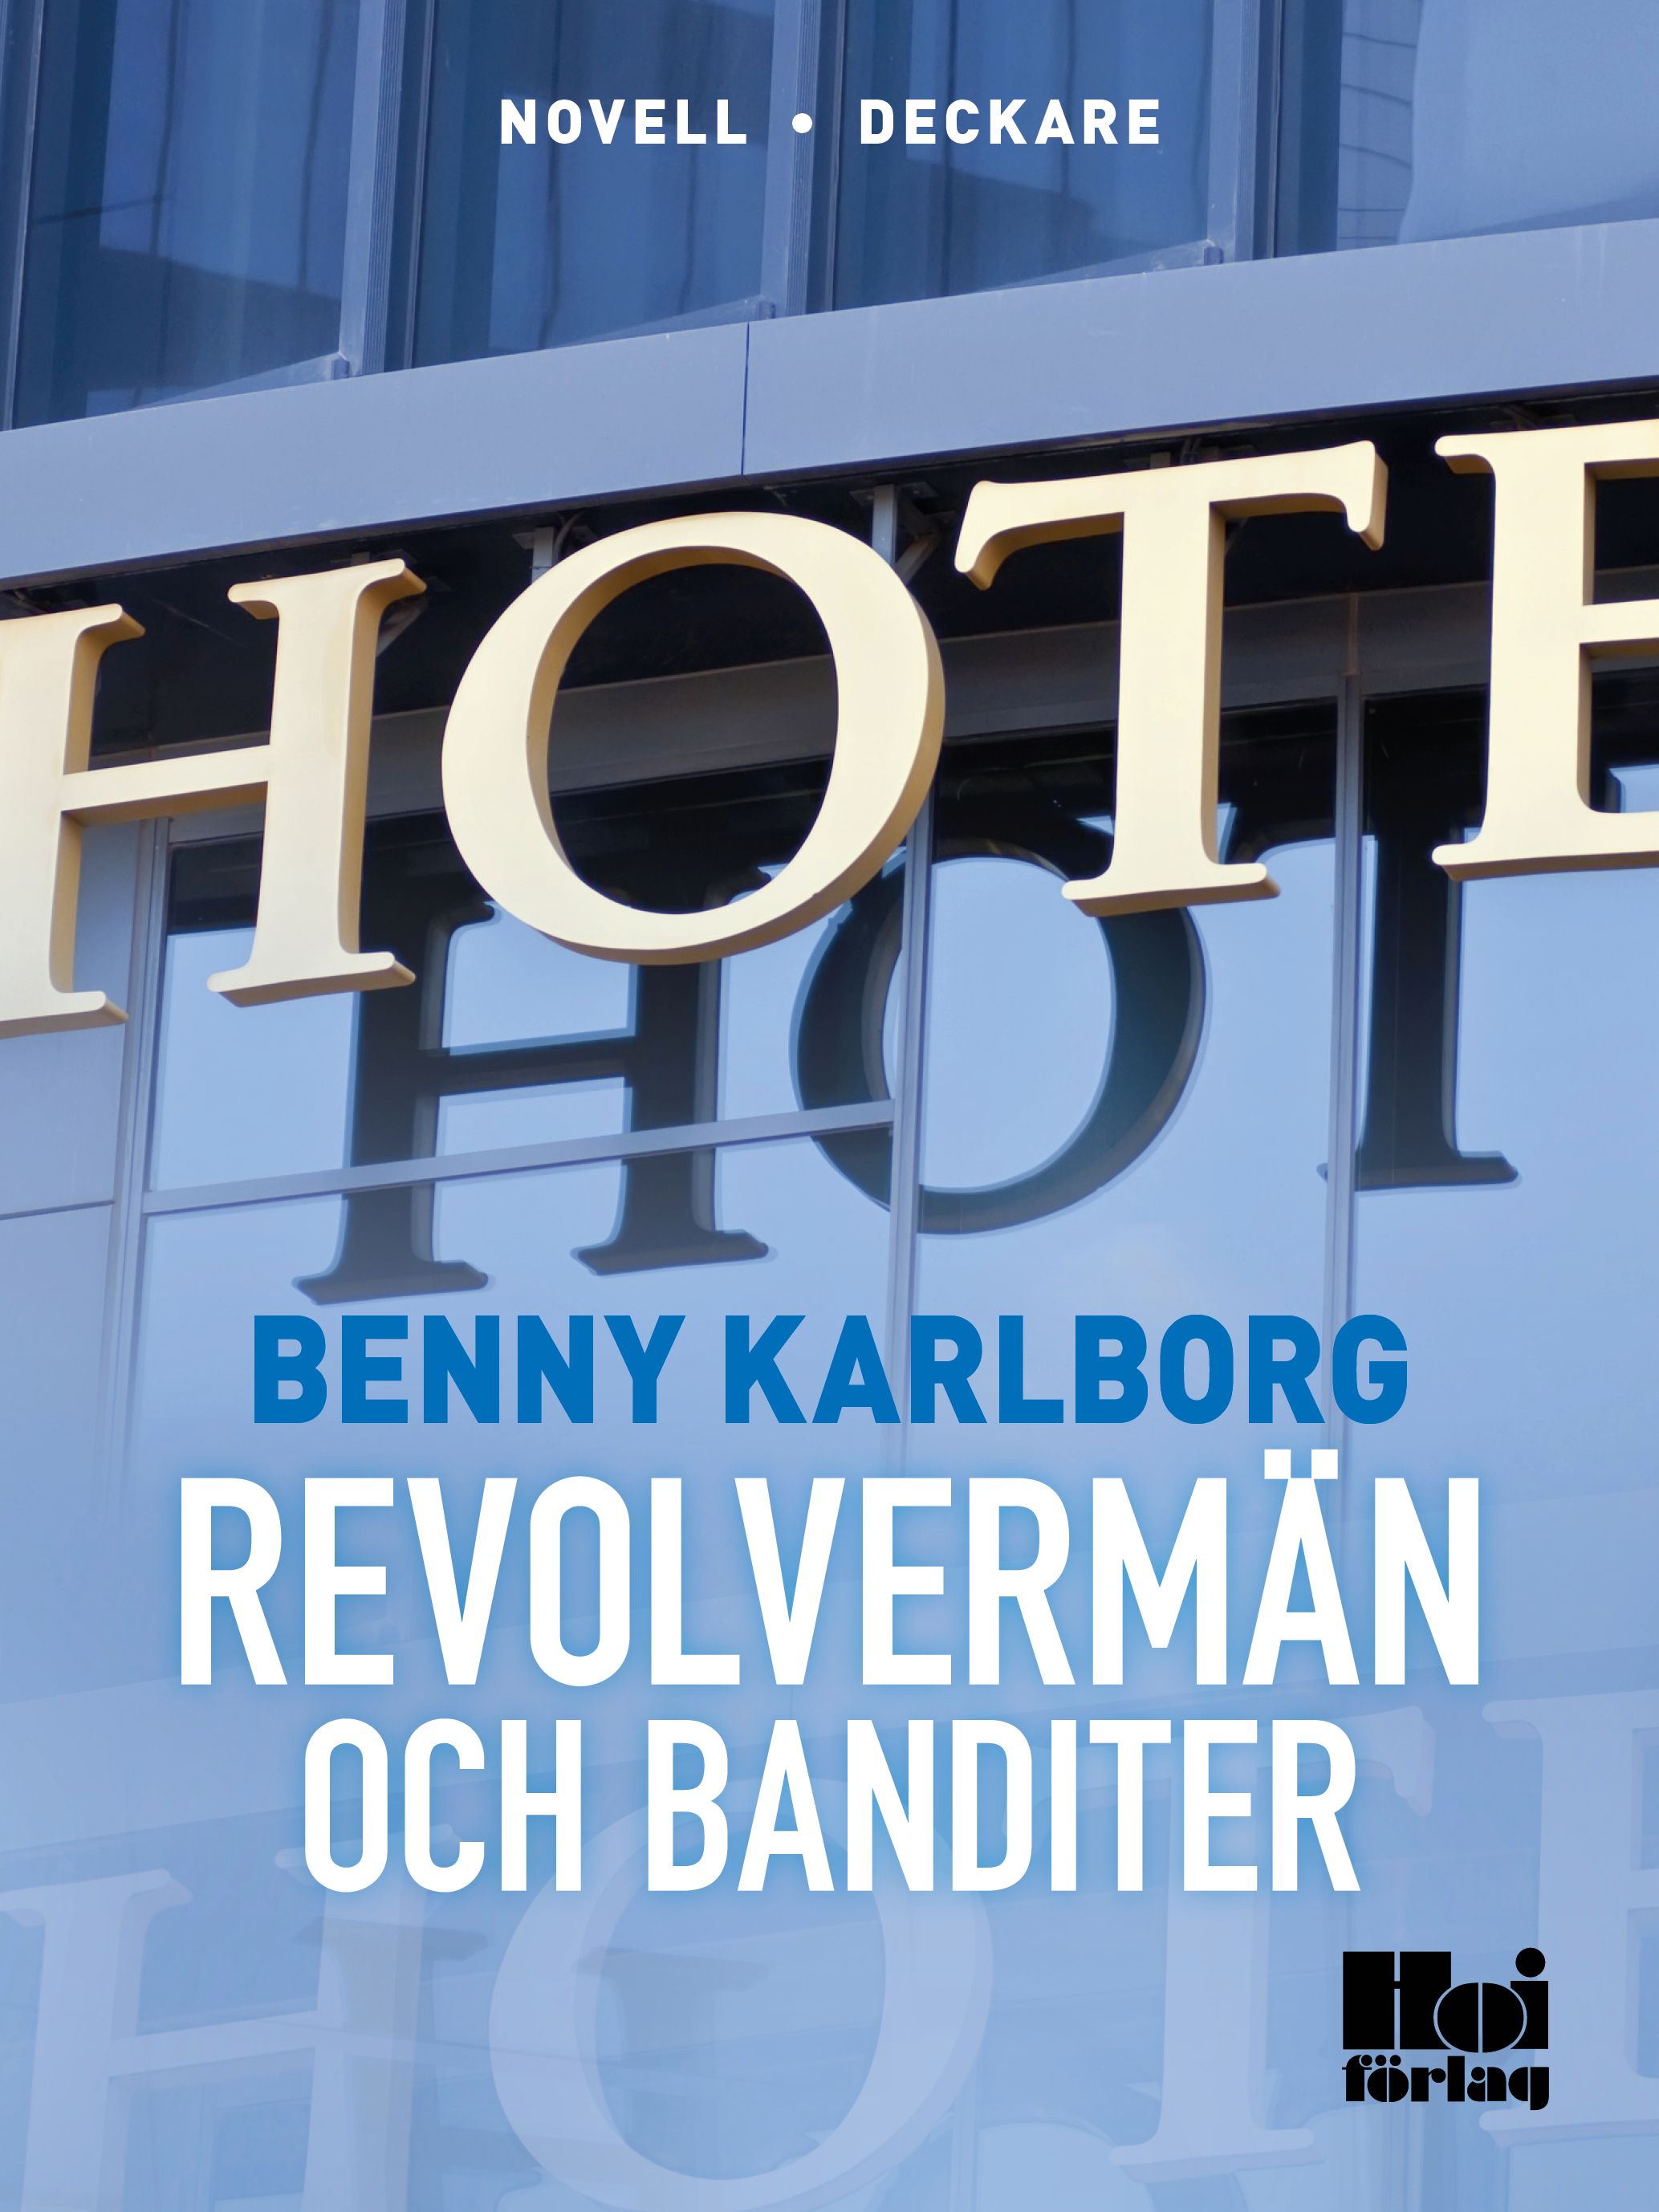 Revolvermän och banditer, e-bok av Benny Karlborg